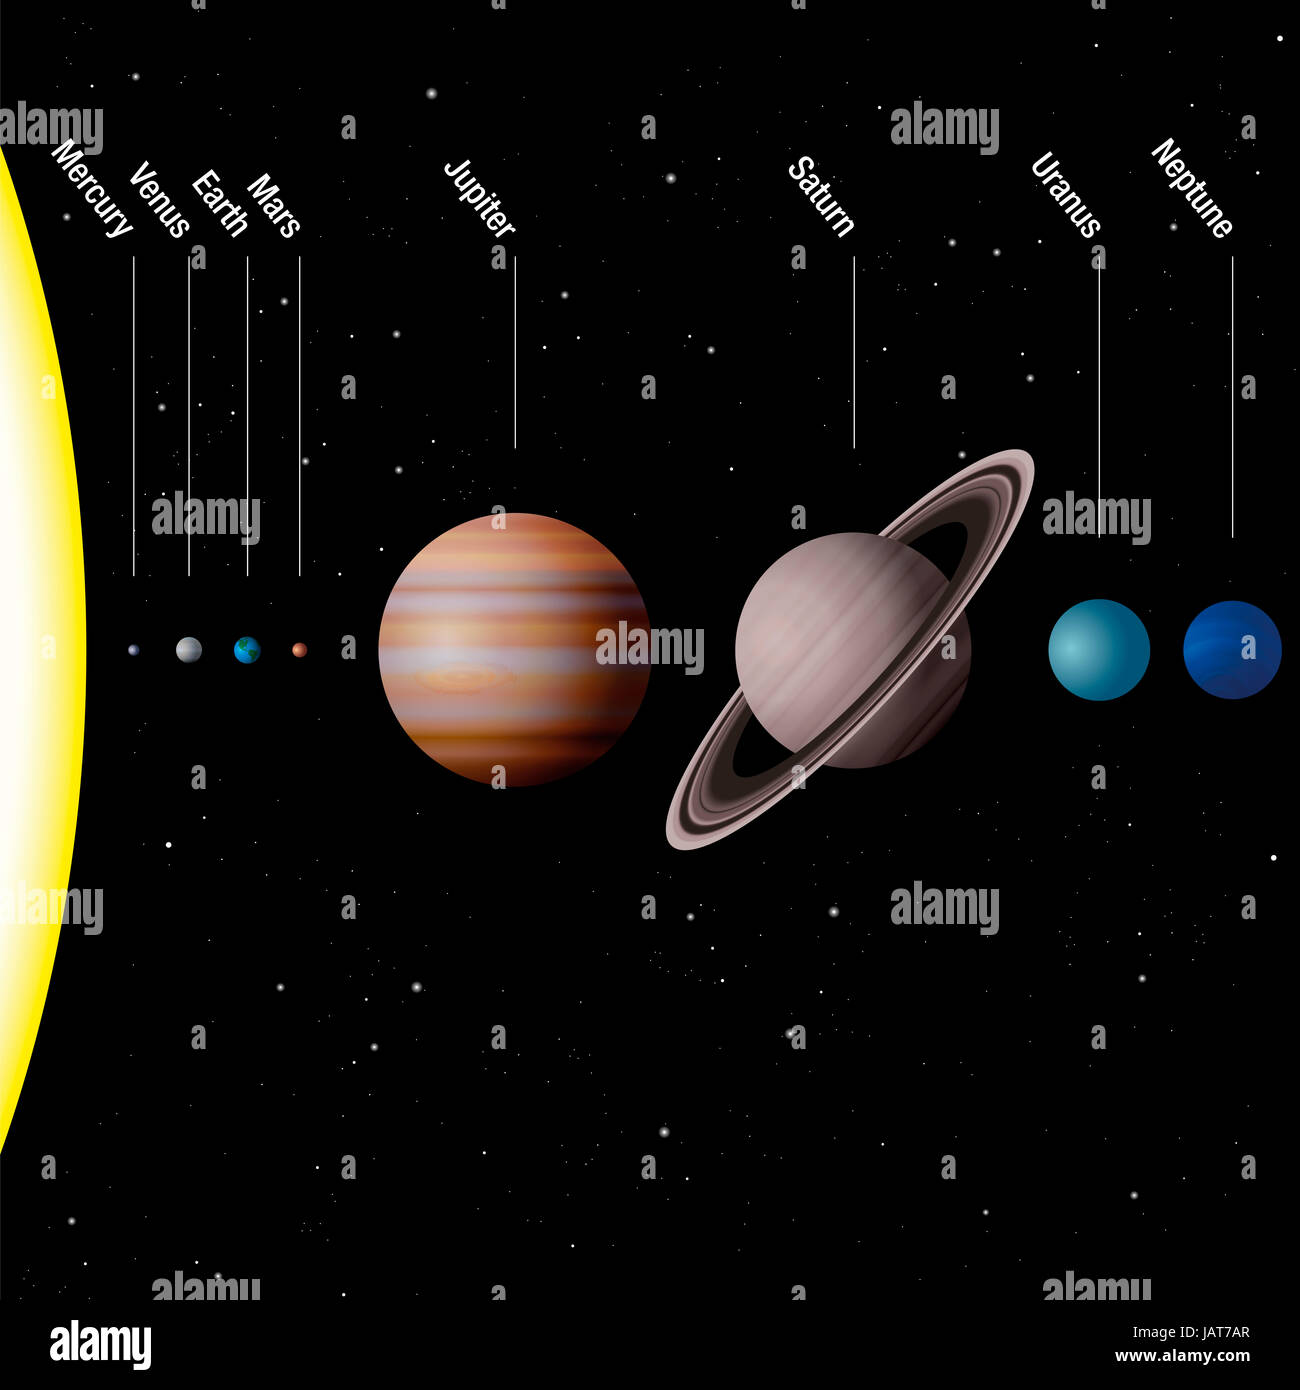 Les planètes de notre système solaire - vrai à l'échelle - Soleil et huit planètes Mercure, Vénus, la Terre, Mars, Jupiter, Saturne, Uranus, Neptune. Banque D'Images